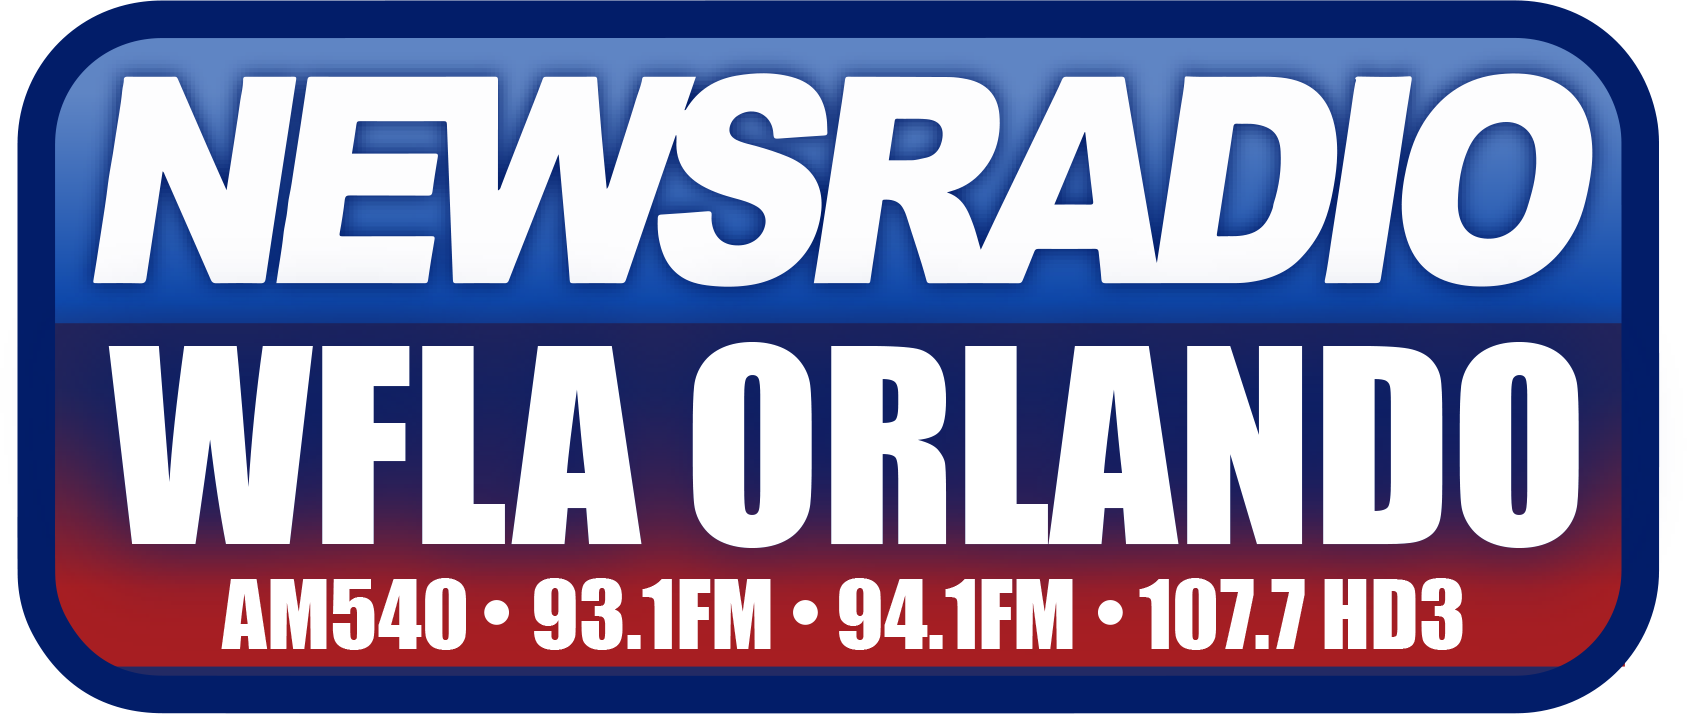 WFLA Orlando radio logo